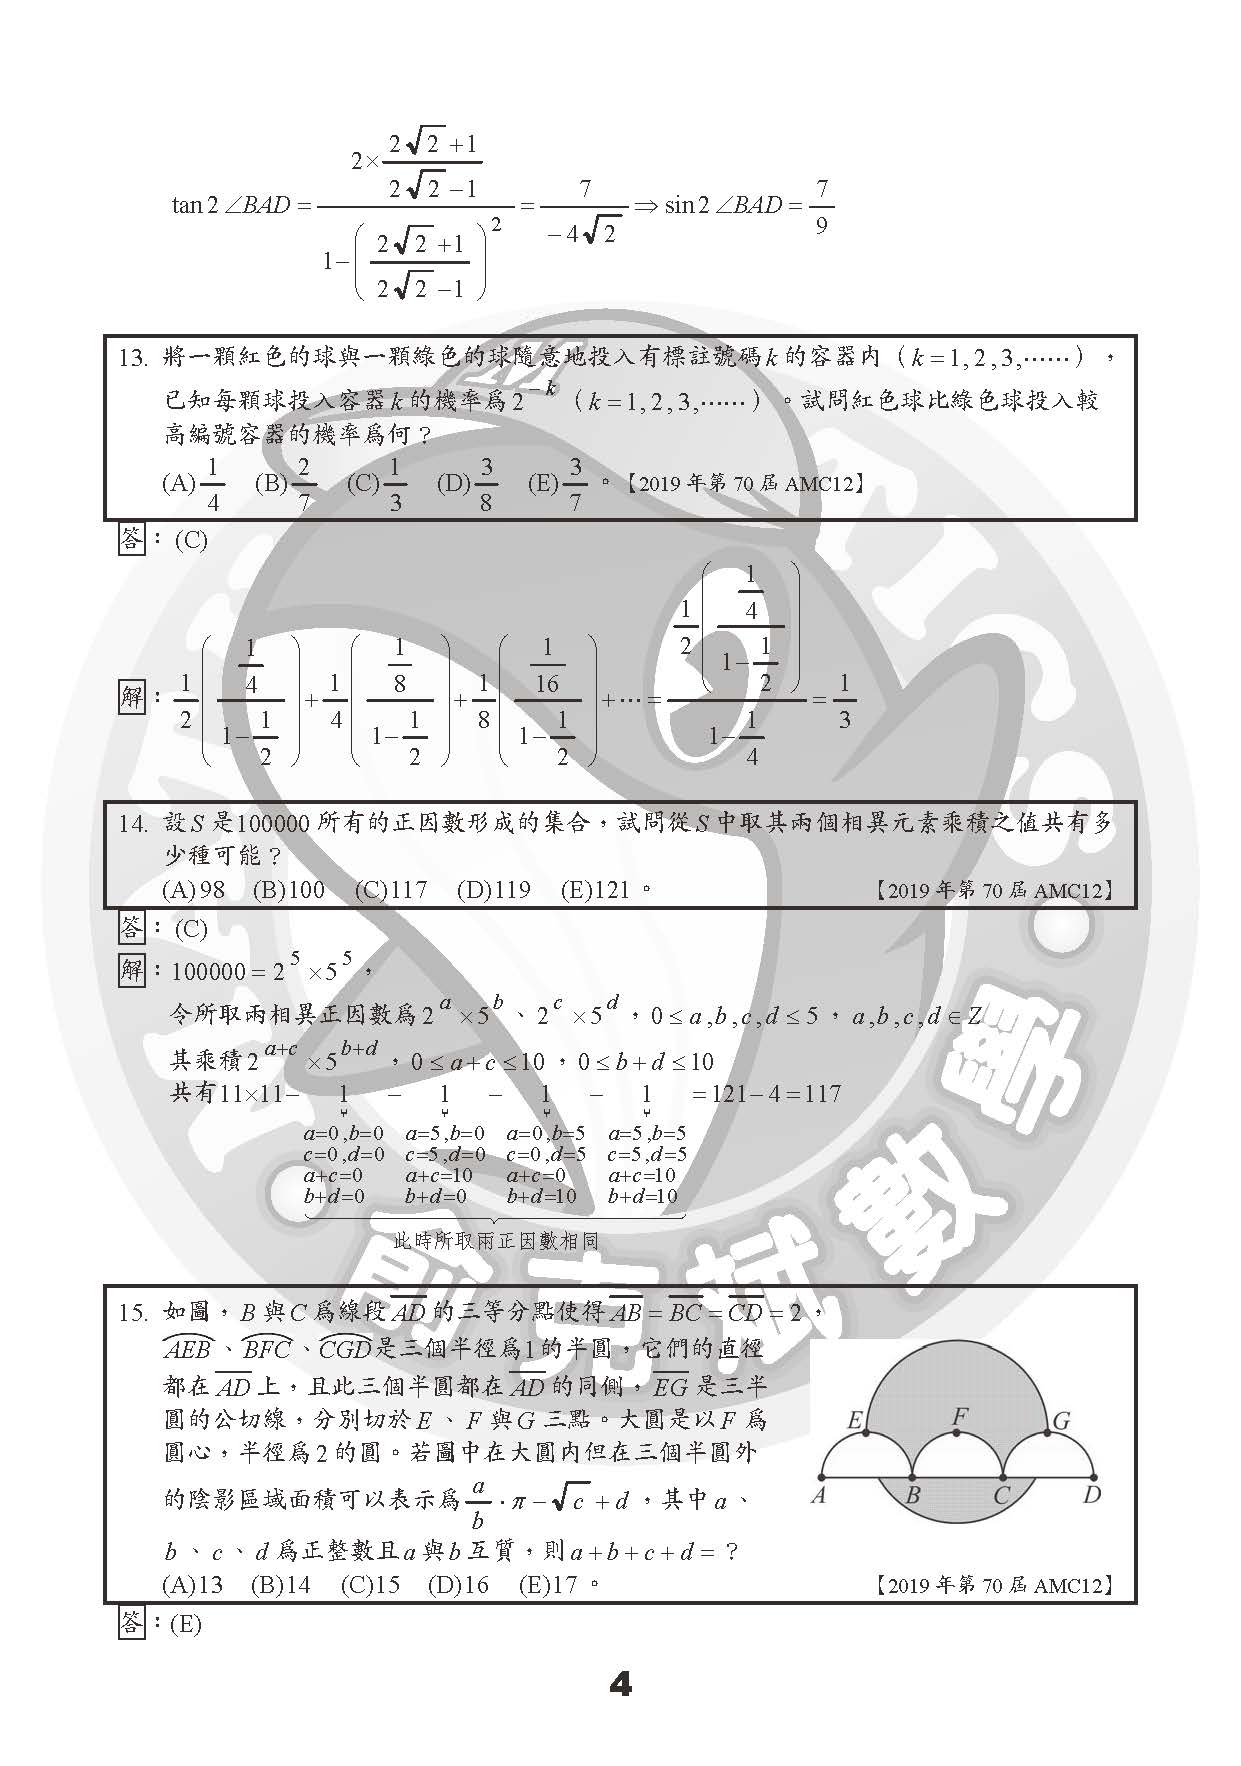 2019第70屆AMC12試題+詳解（俞克斌老師）_頁面_4.jpg